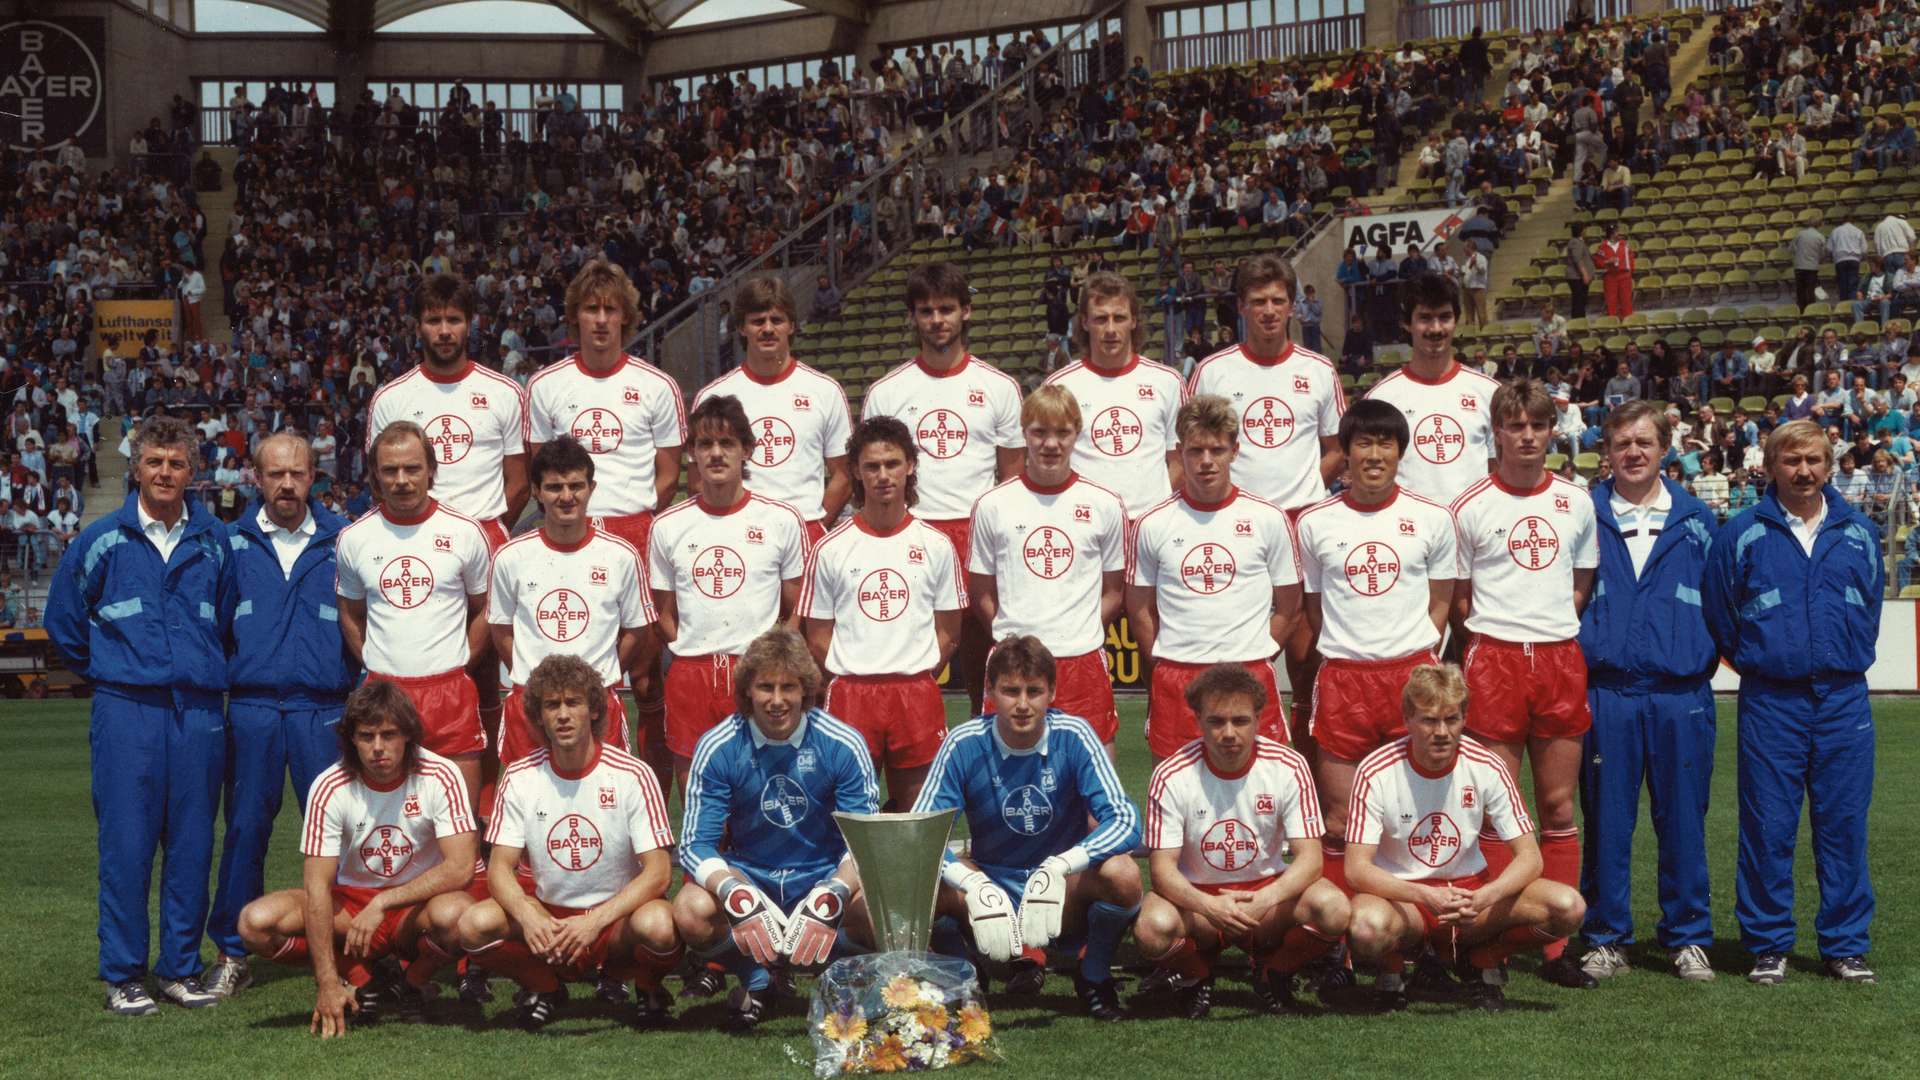 1988_05_21_Mannschaftsfoto_Kader_87-88_mit_UEFA_Pokal_2.jpg